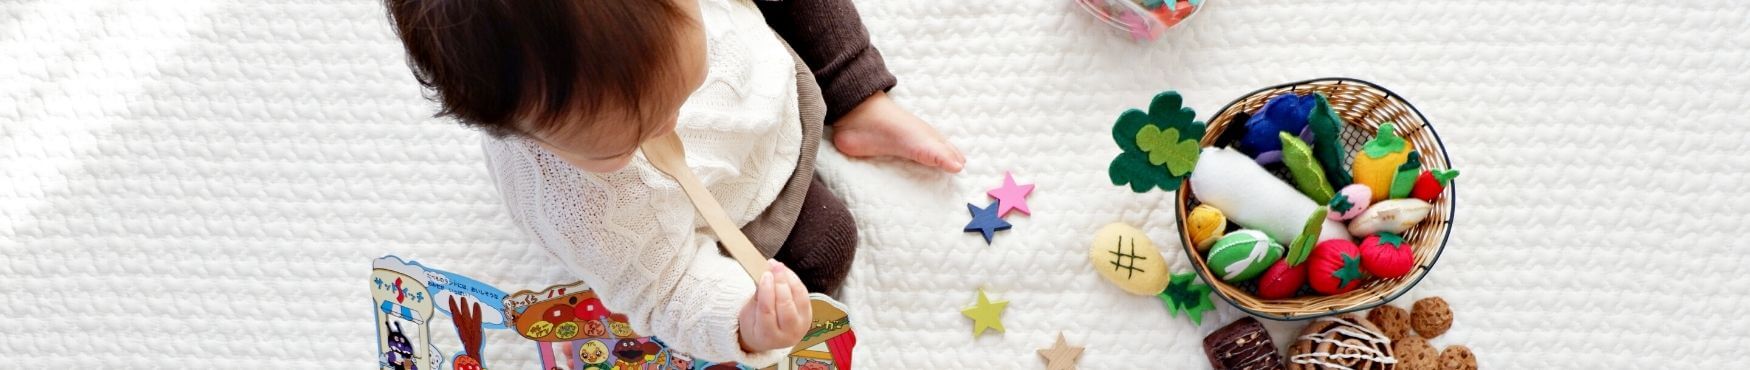 Babyshower : offrir un peignoir de bain à un bébé